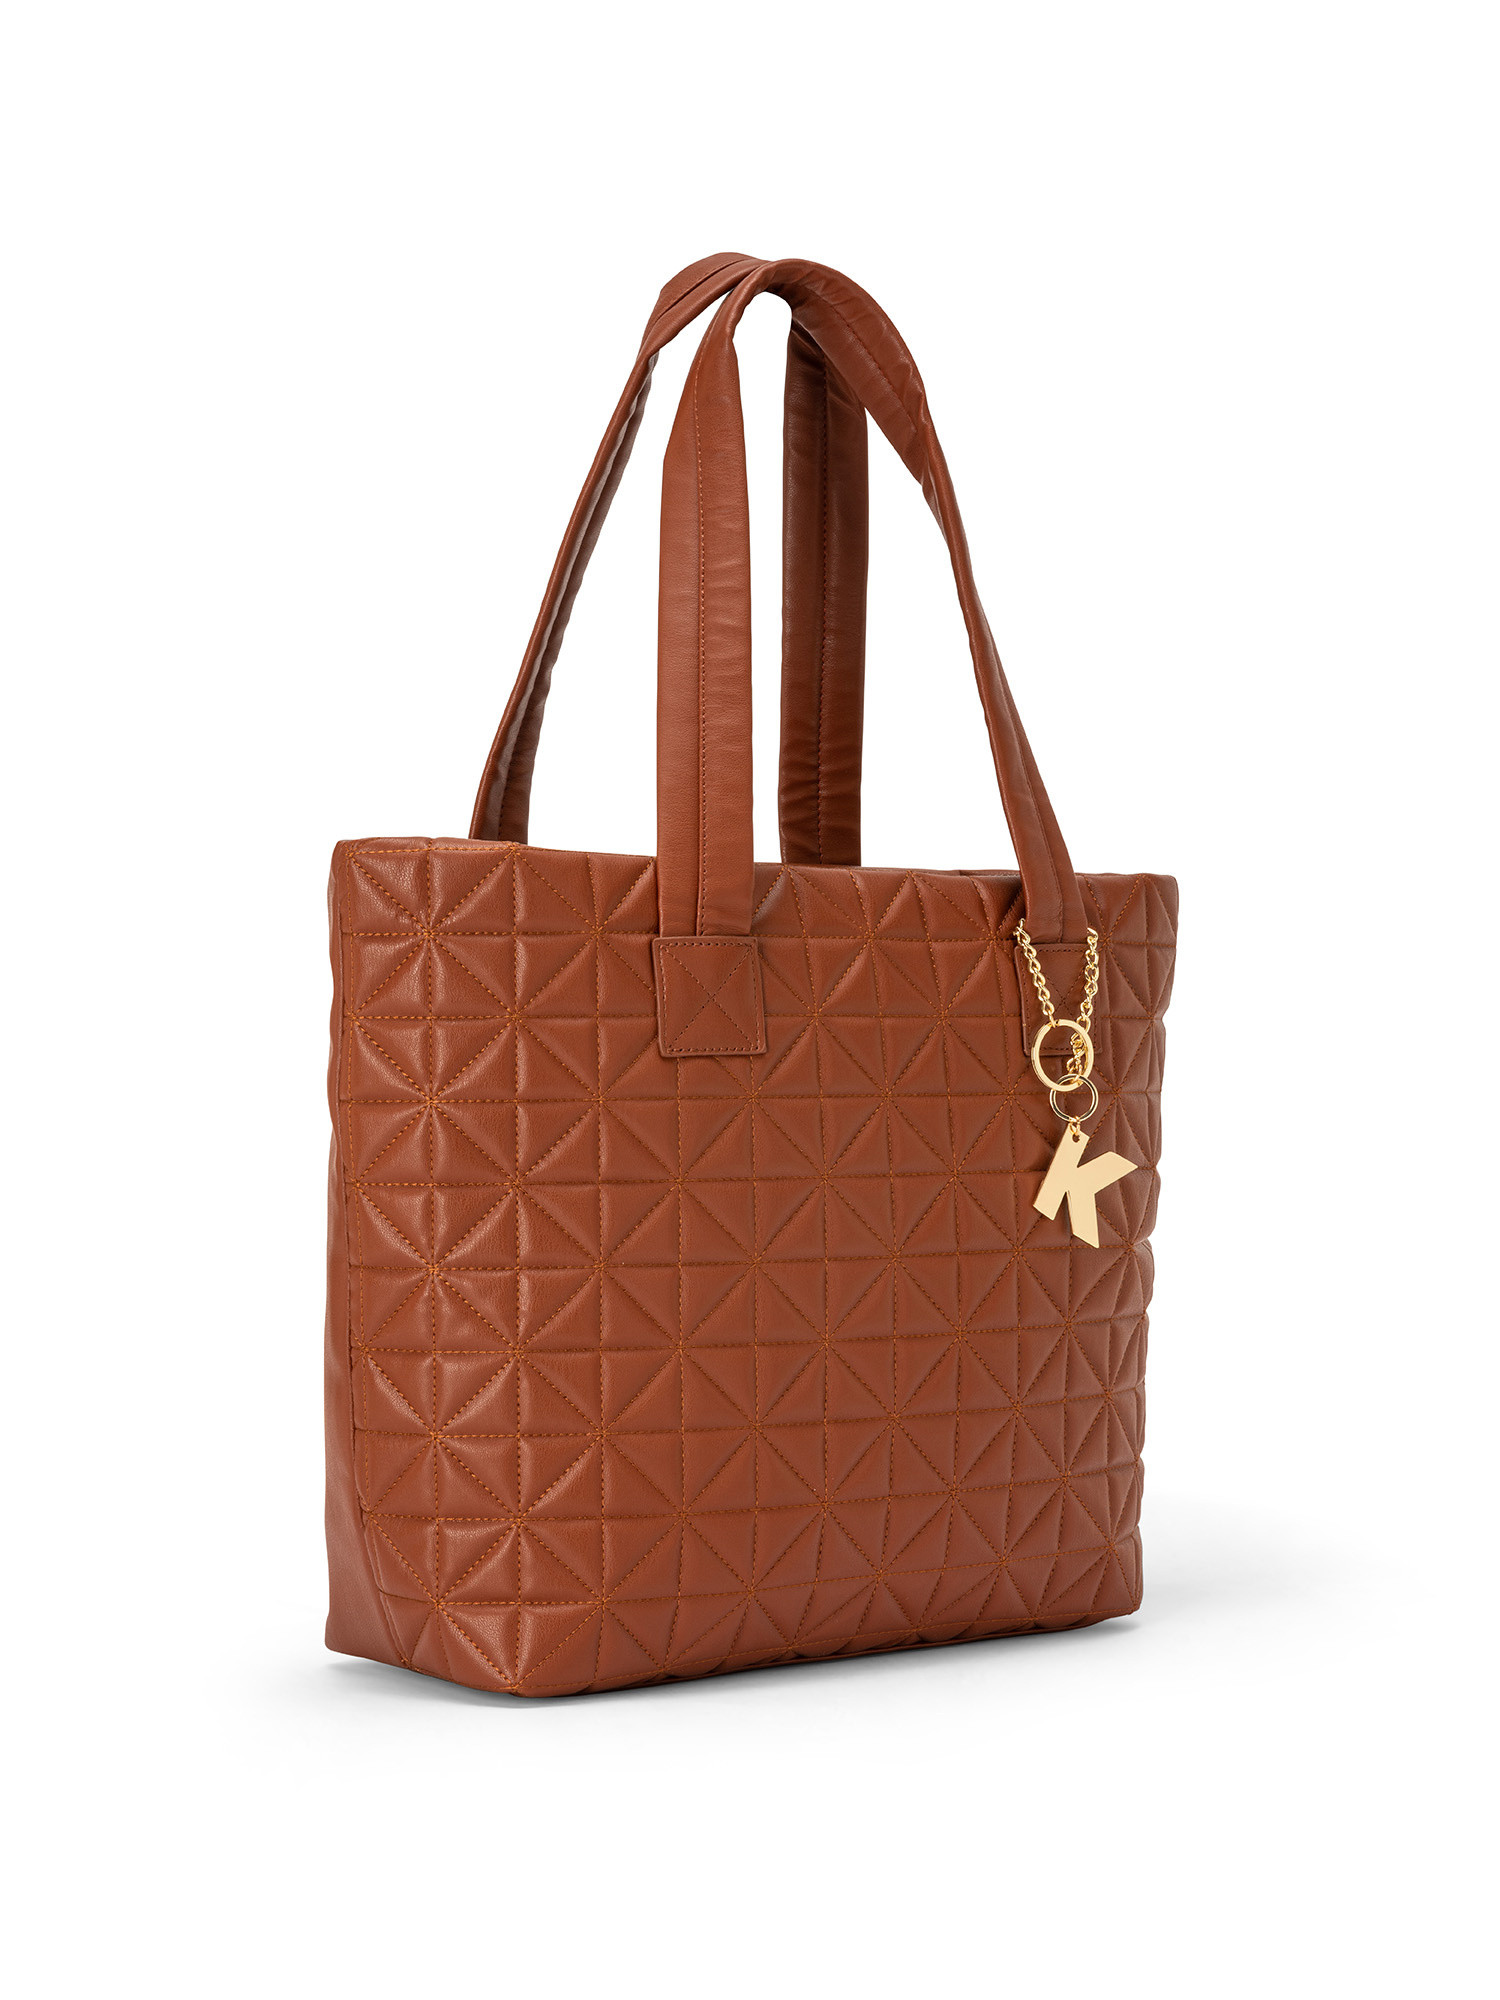 Koan - Shopping bag with motif, Brown, large image number 1